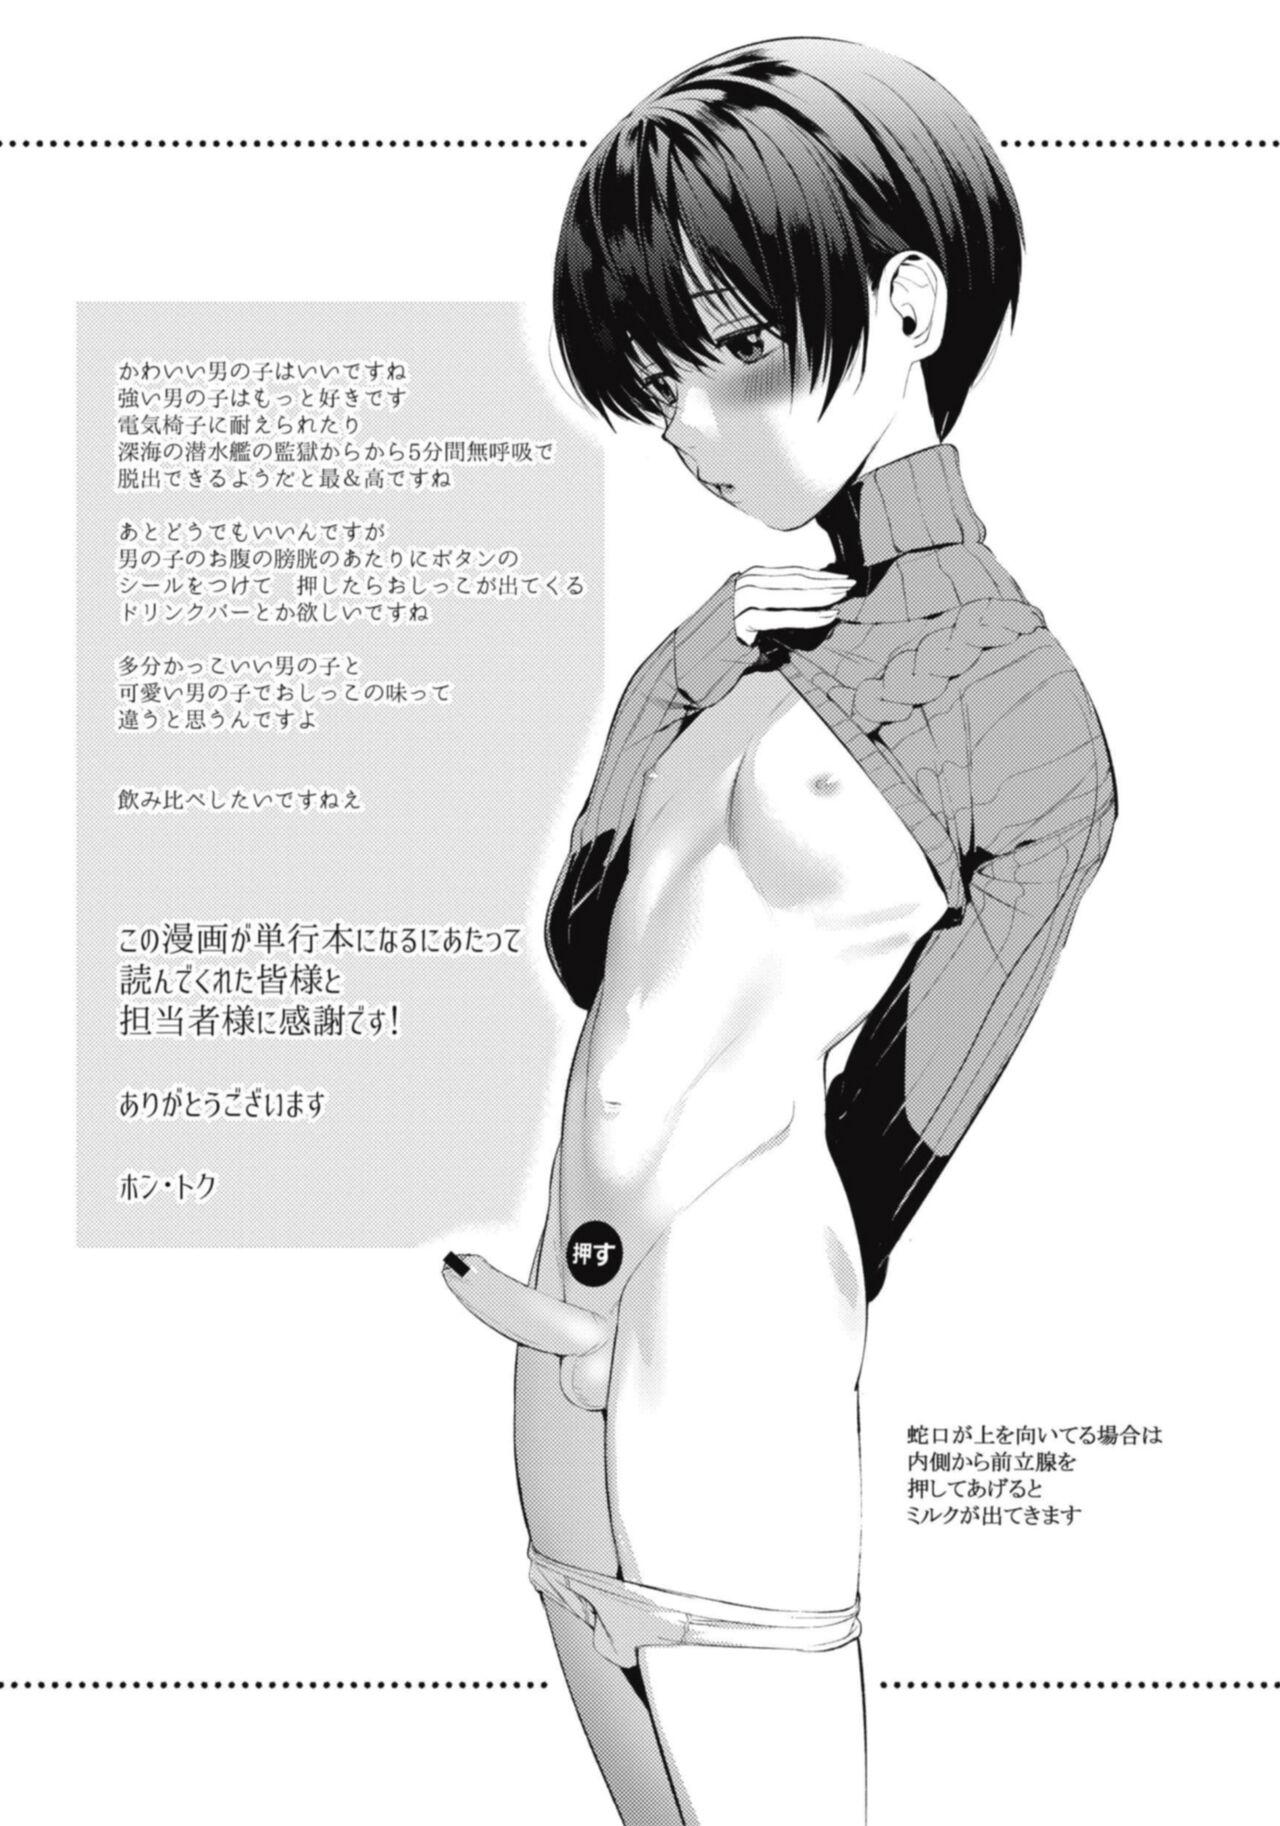 Hentai Shounen Kyoukasho - HENTAI BOYS SCHOOLBOOK 178